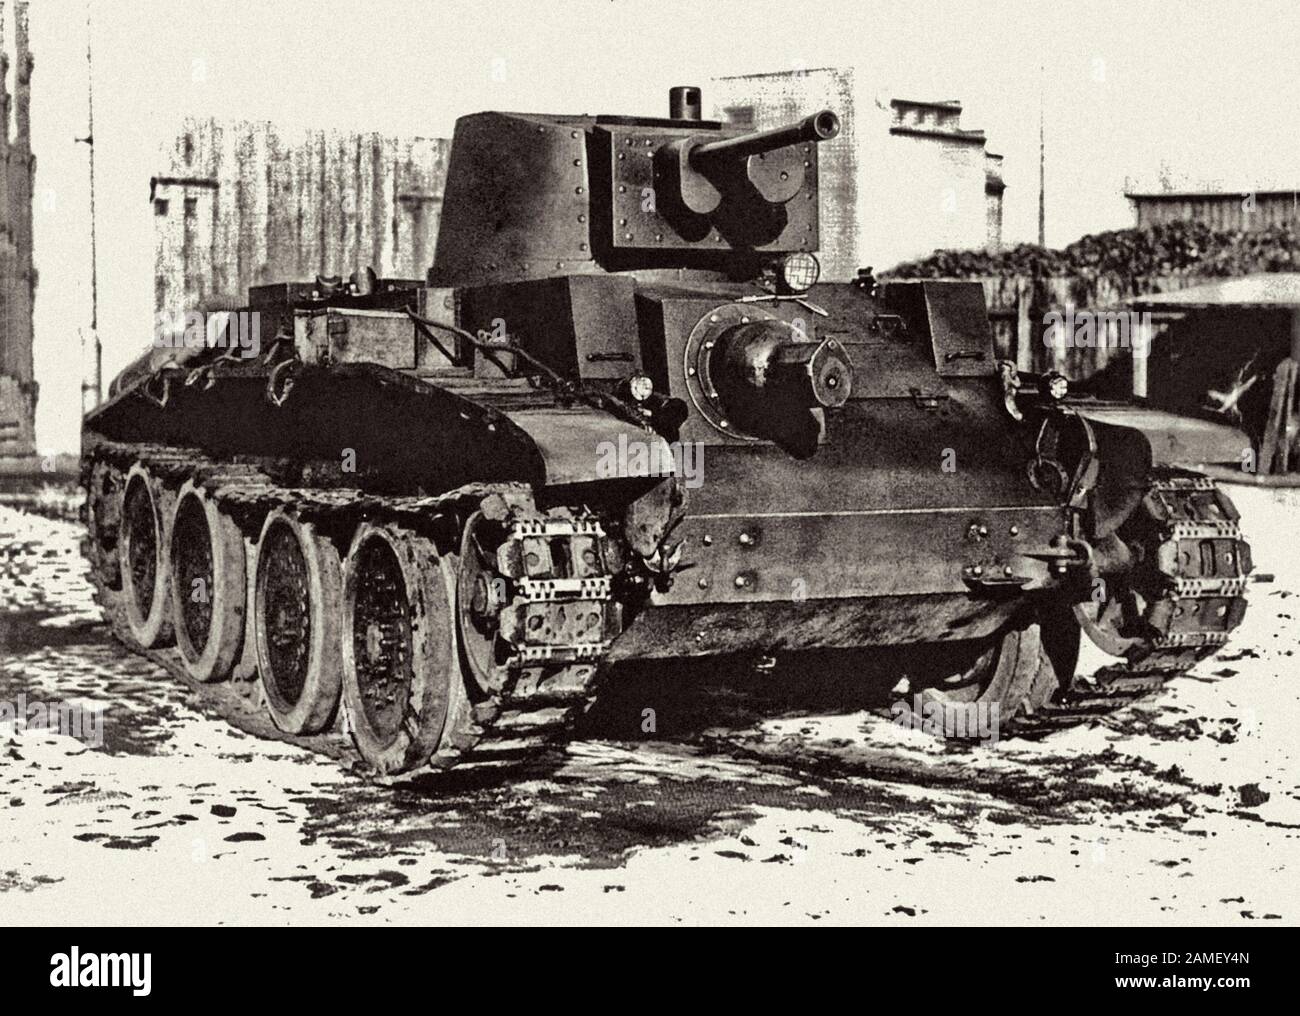 10TP polnischer leichter Kreuzertank. Es war der Höhepunkt des polnischen Panzerbaus, der an die Vorkriegszeit gedacht war und den Anforderungen eines neuen Manövers entsprach Stockfoto